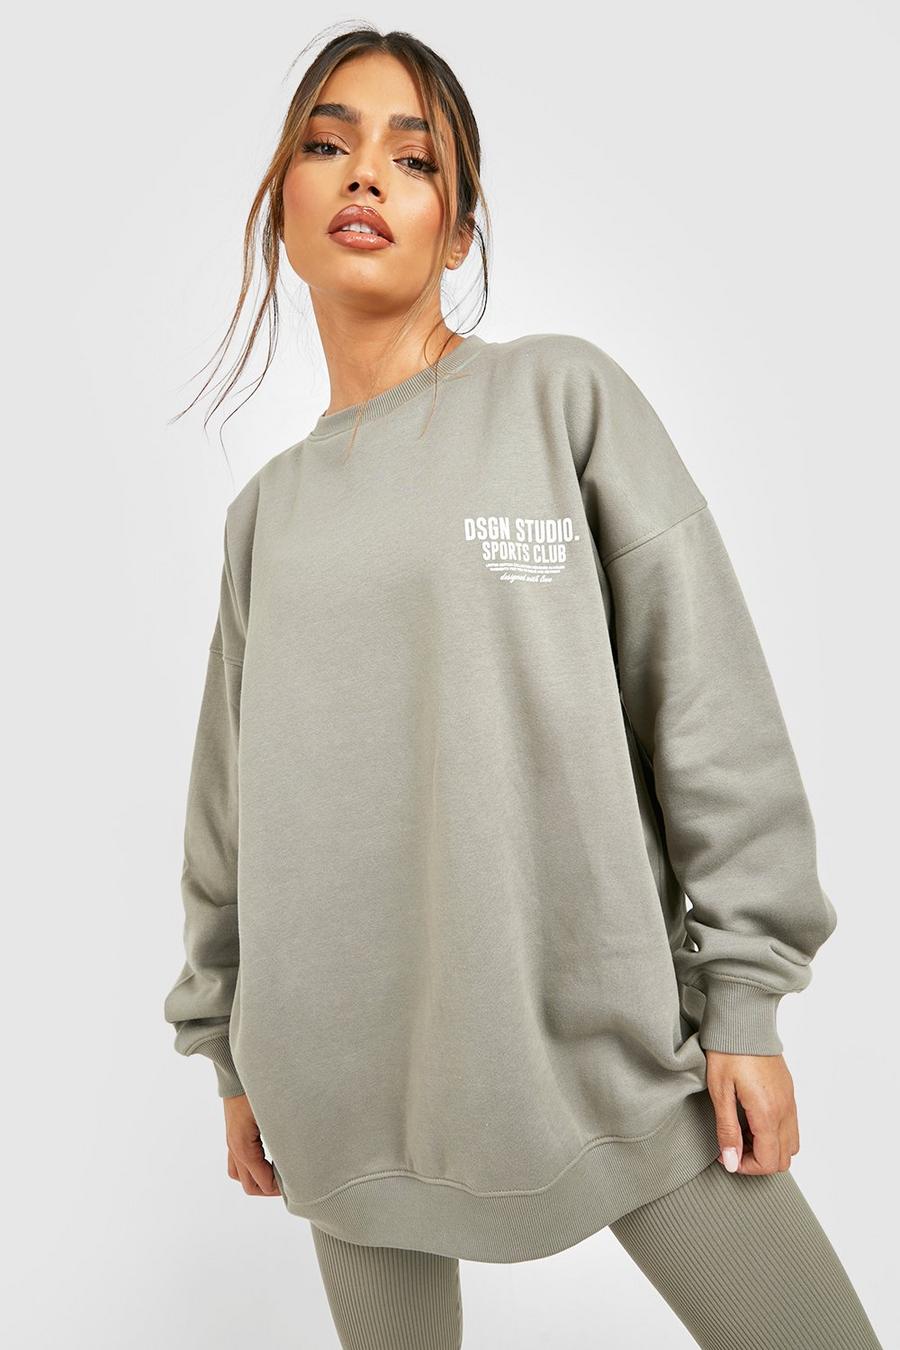 Generisch Women's Sweatshirt Sports Hoodie Trendy Streetwear